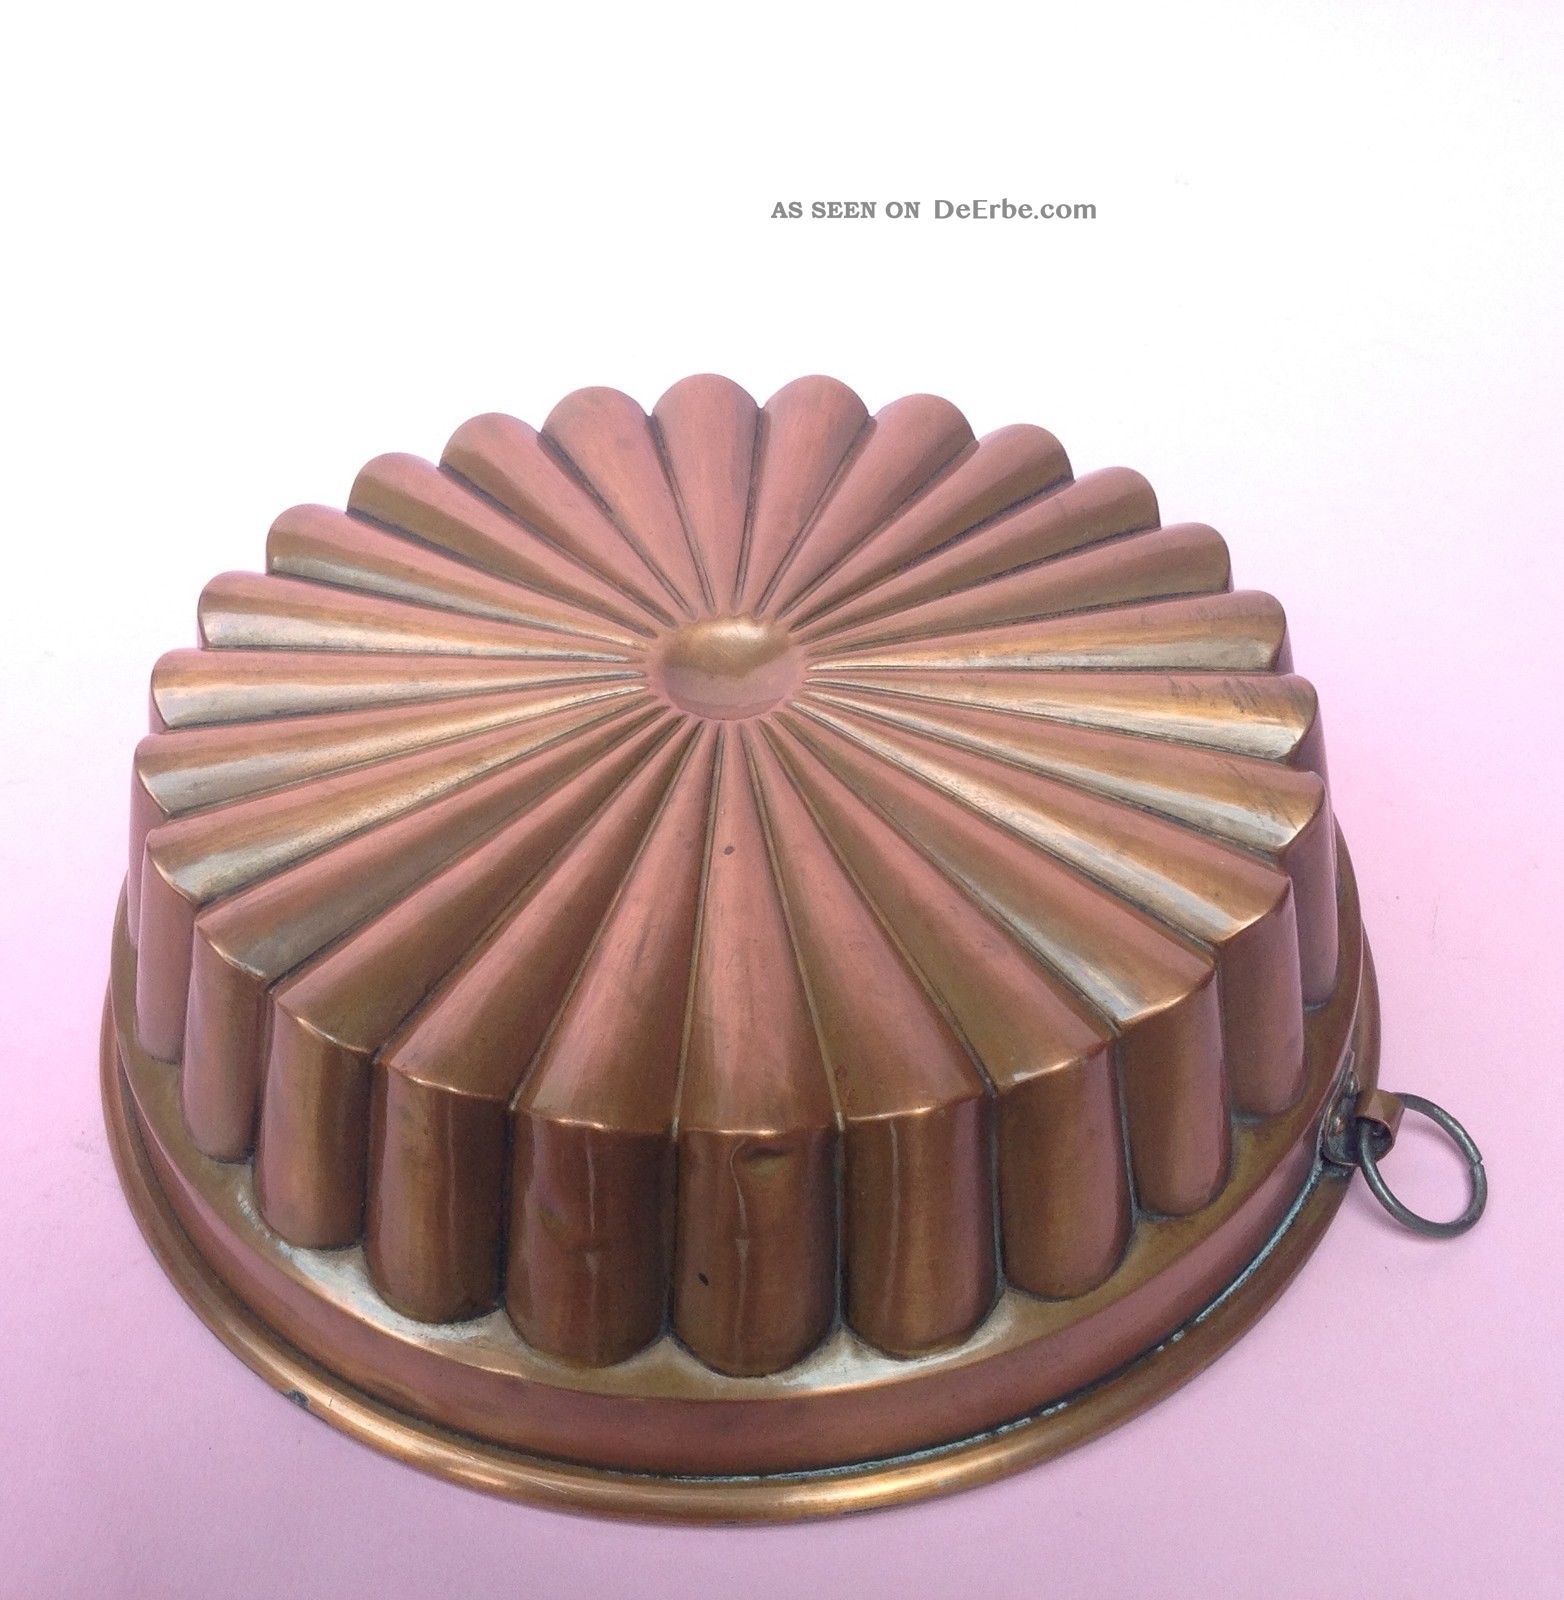 Strahlenförmige Kupfer Backform Kupfer Form Guglhupf Model Kuchen Backen 1880 Kupfer Bild